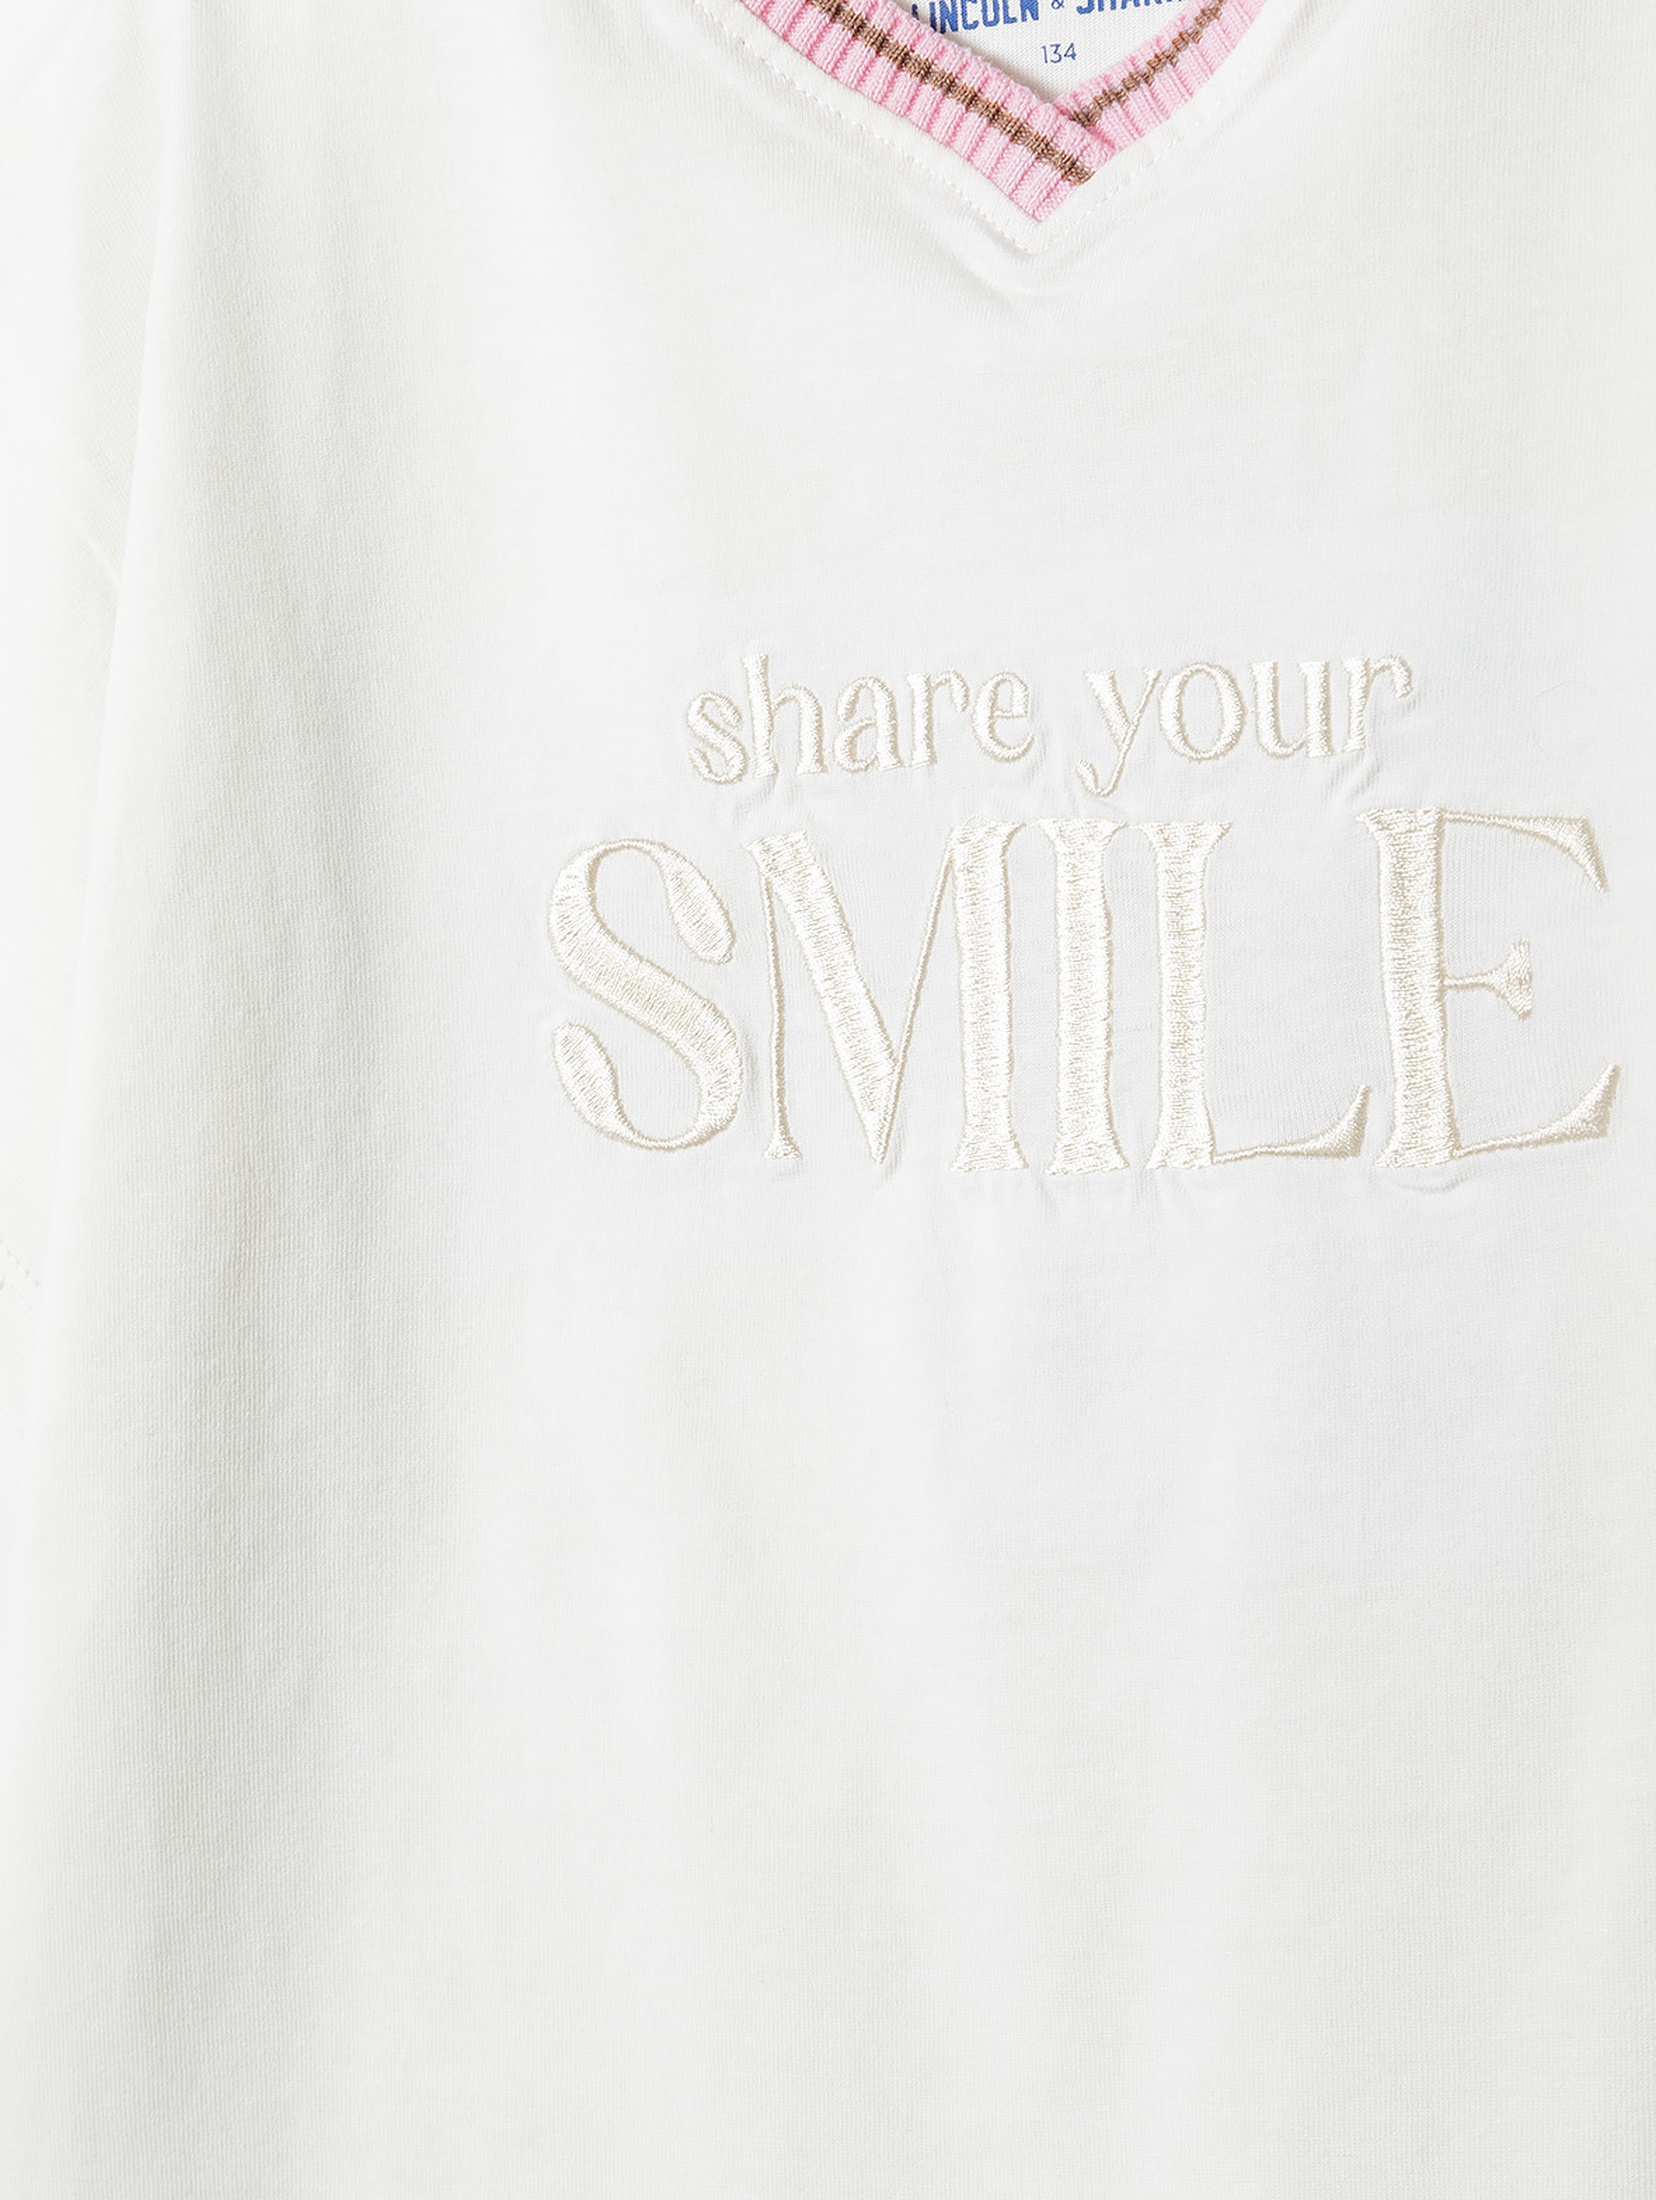 T-shirt pudełkowy dla dziewczynki - SMILE - Lincoln&Sharks